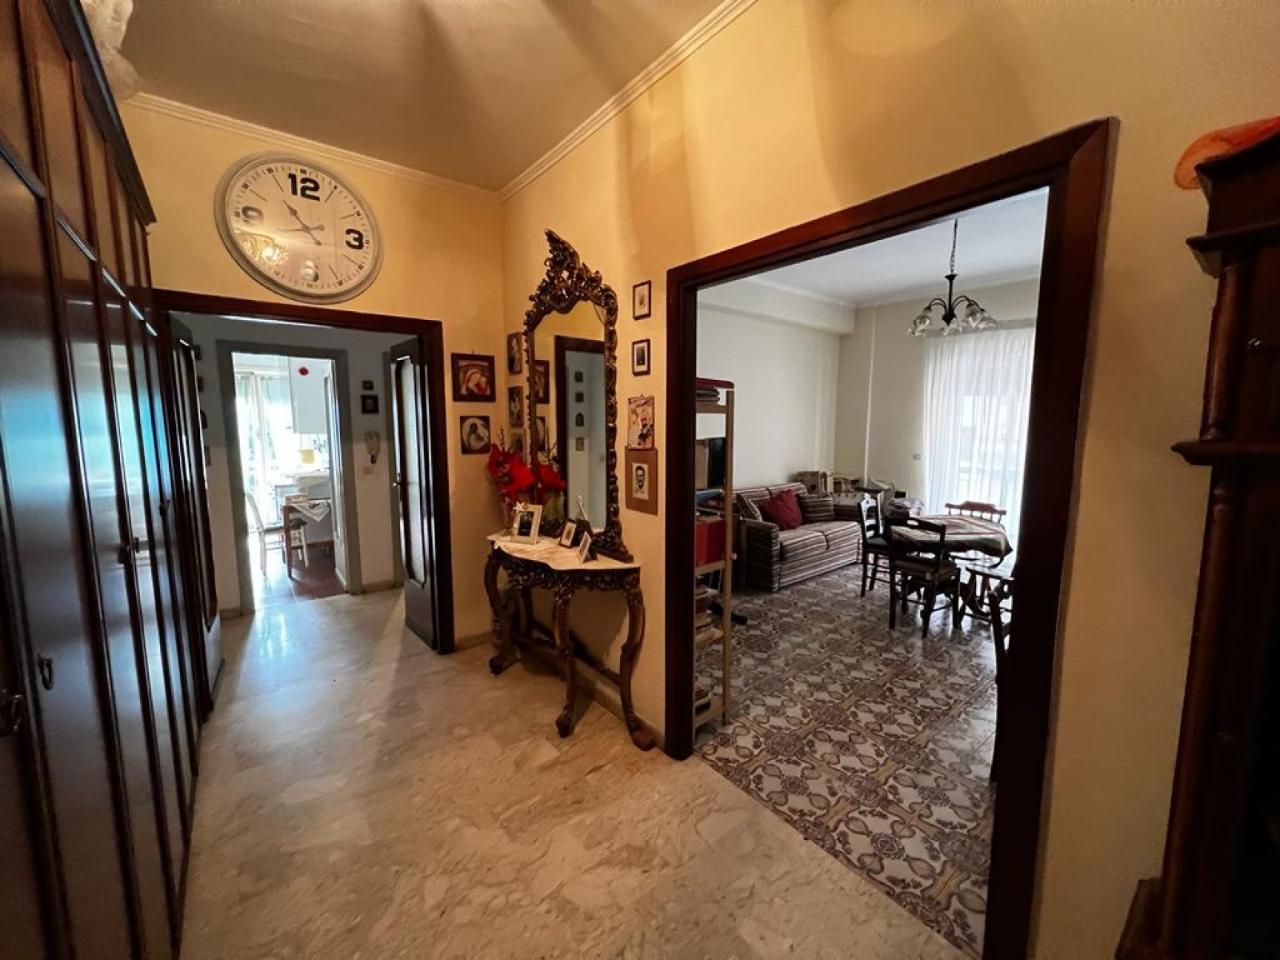 Appartamento in vendita a Palestrina